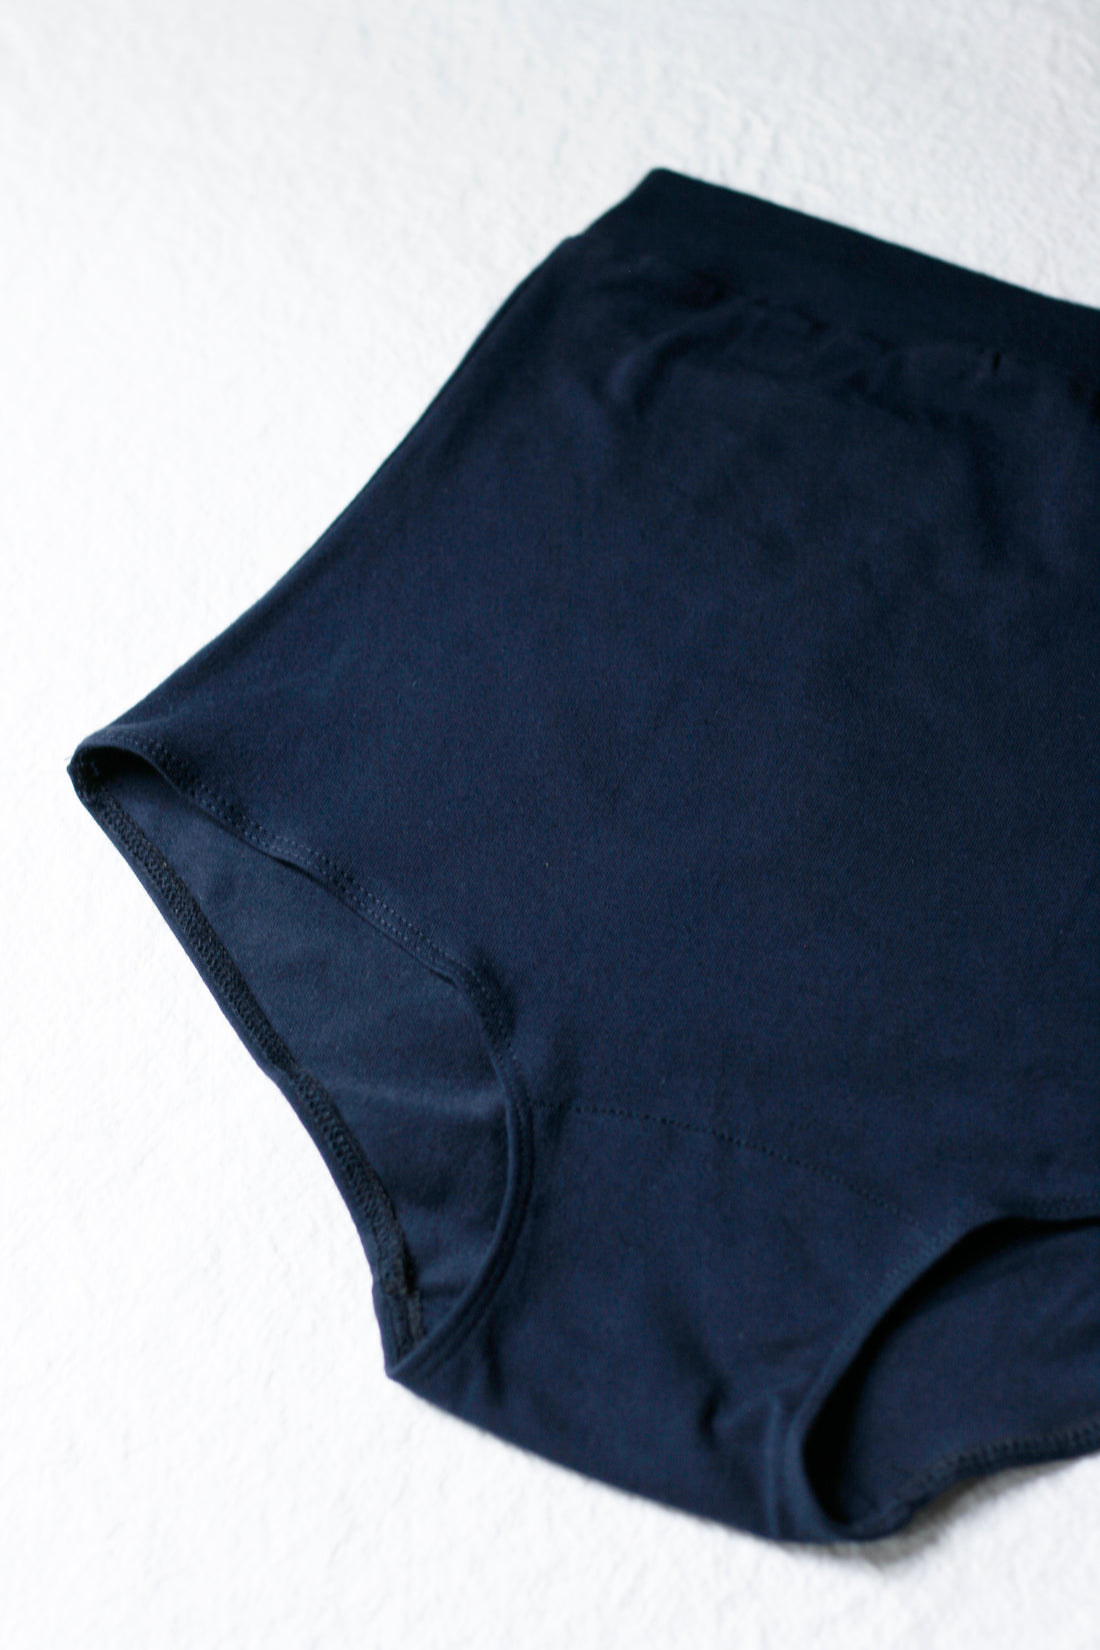 Extra high waist underwear No6072w, neutrals – atelier b